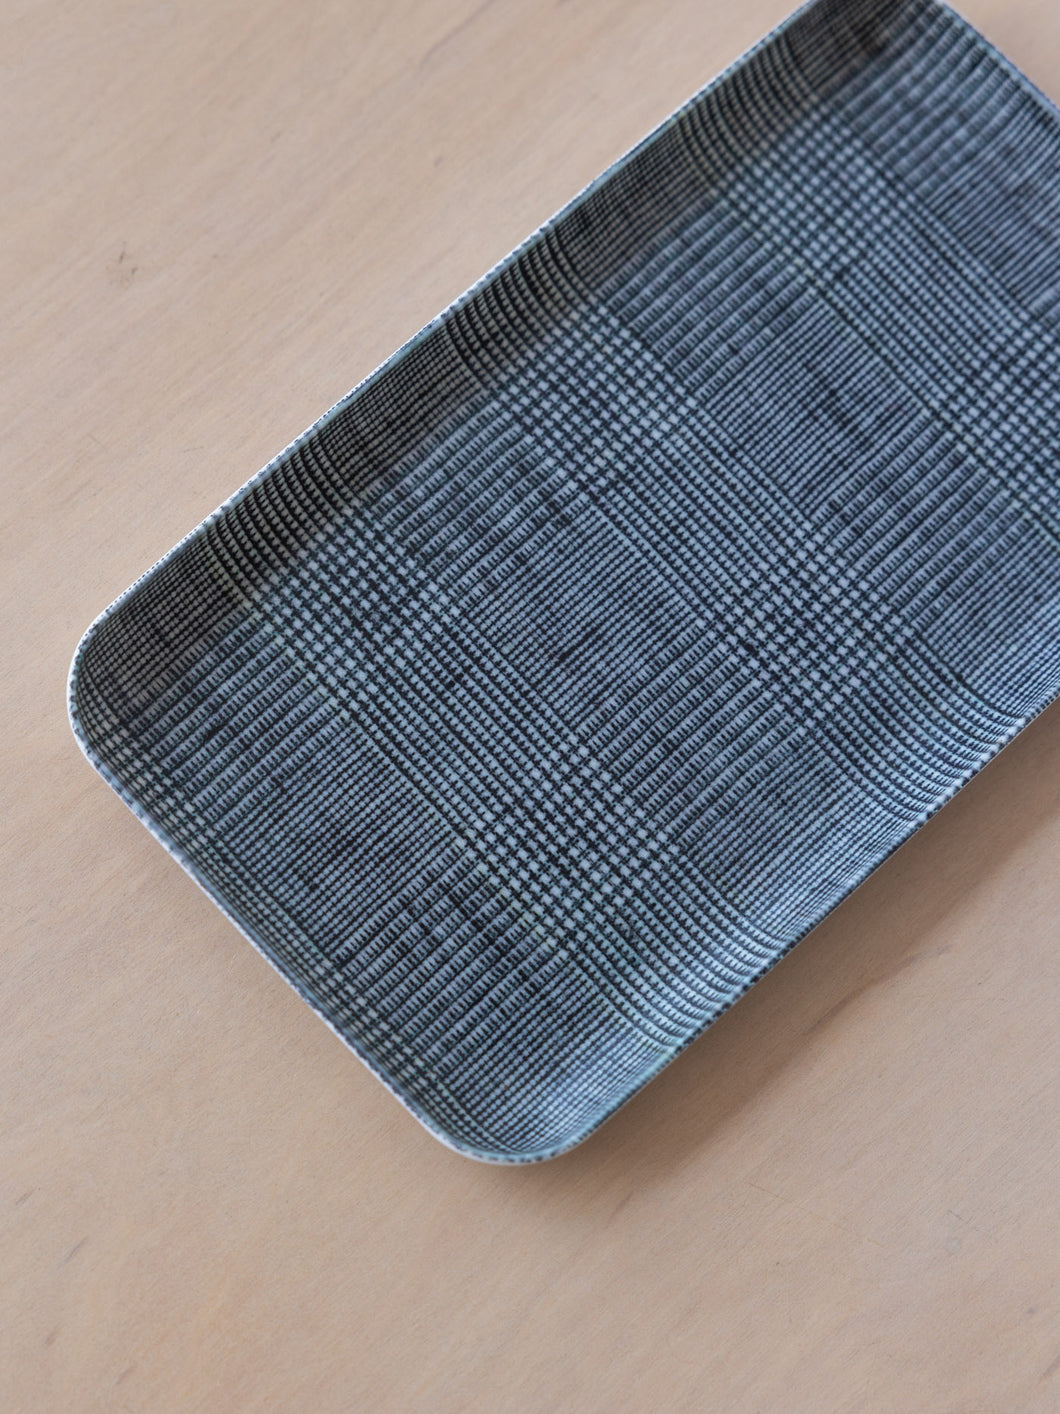 Linen Coating Tray Medium – The Arc